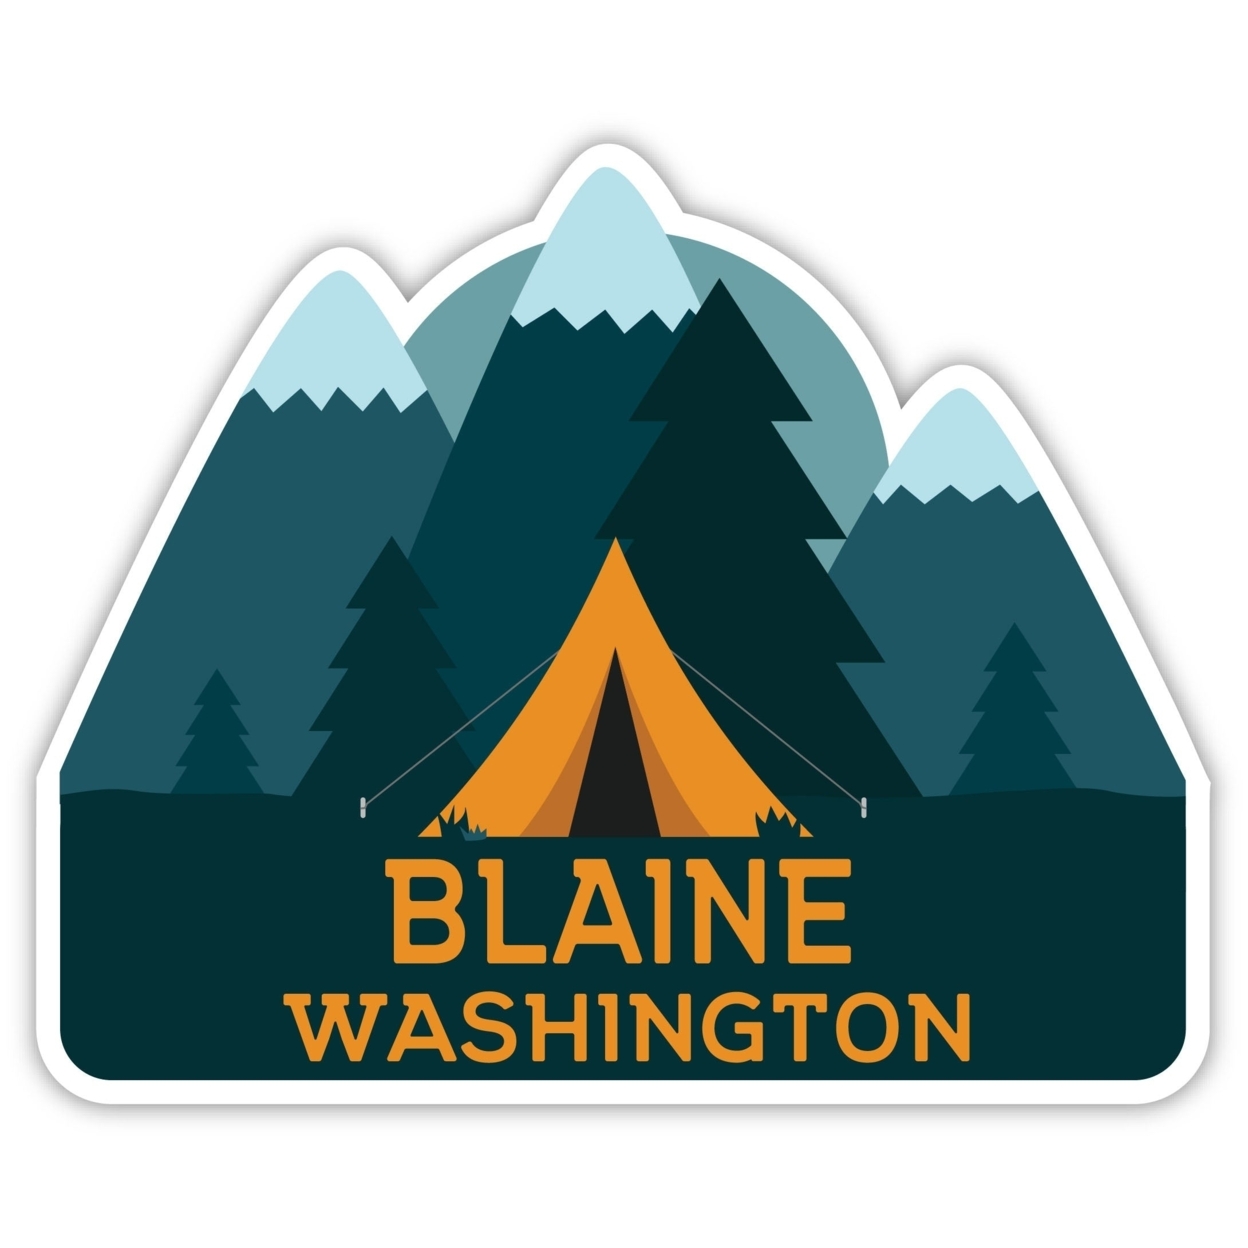 Blaine Washington Souvenir Decorative Stickers (Choose Theme And Size) - Single Unit, 6-Inch, Tent